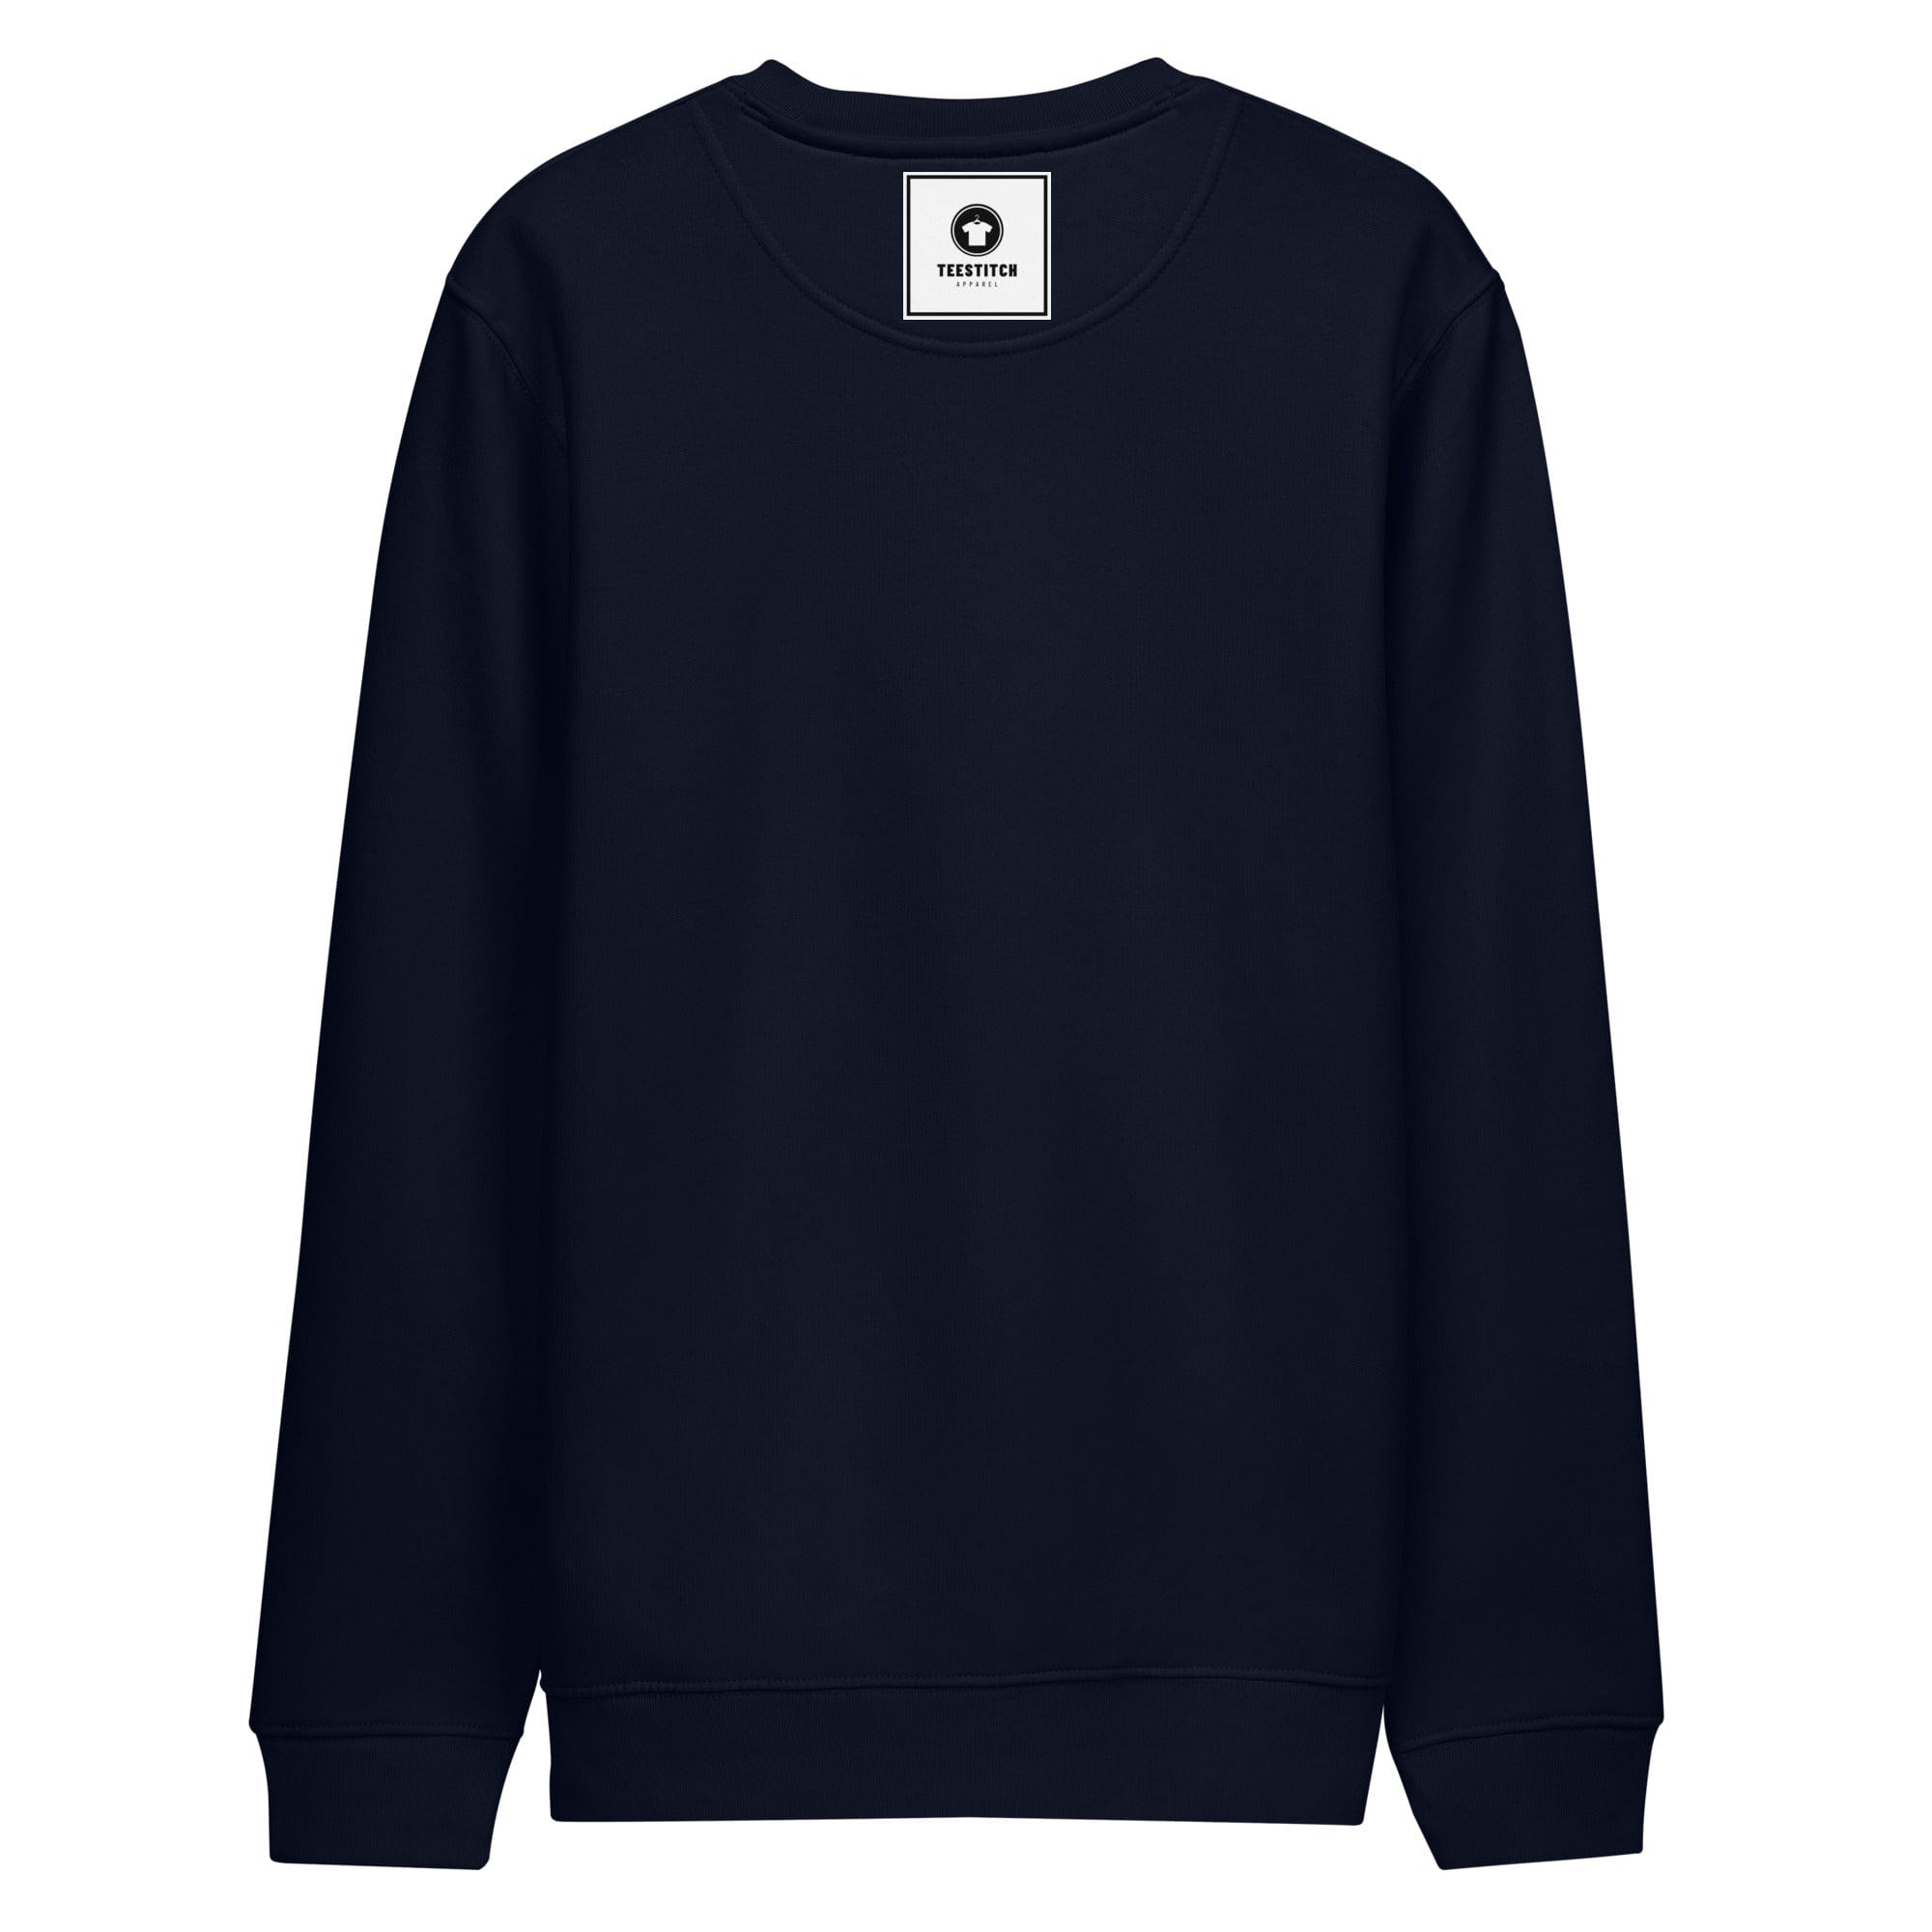 Taurus - Unisex Sweatshirt || TeeStitch Apparel Sweatshirt image